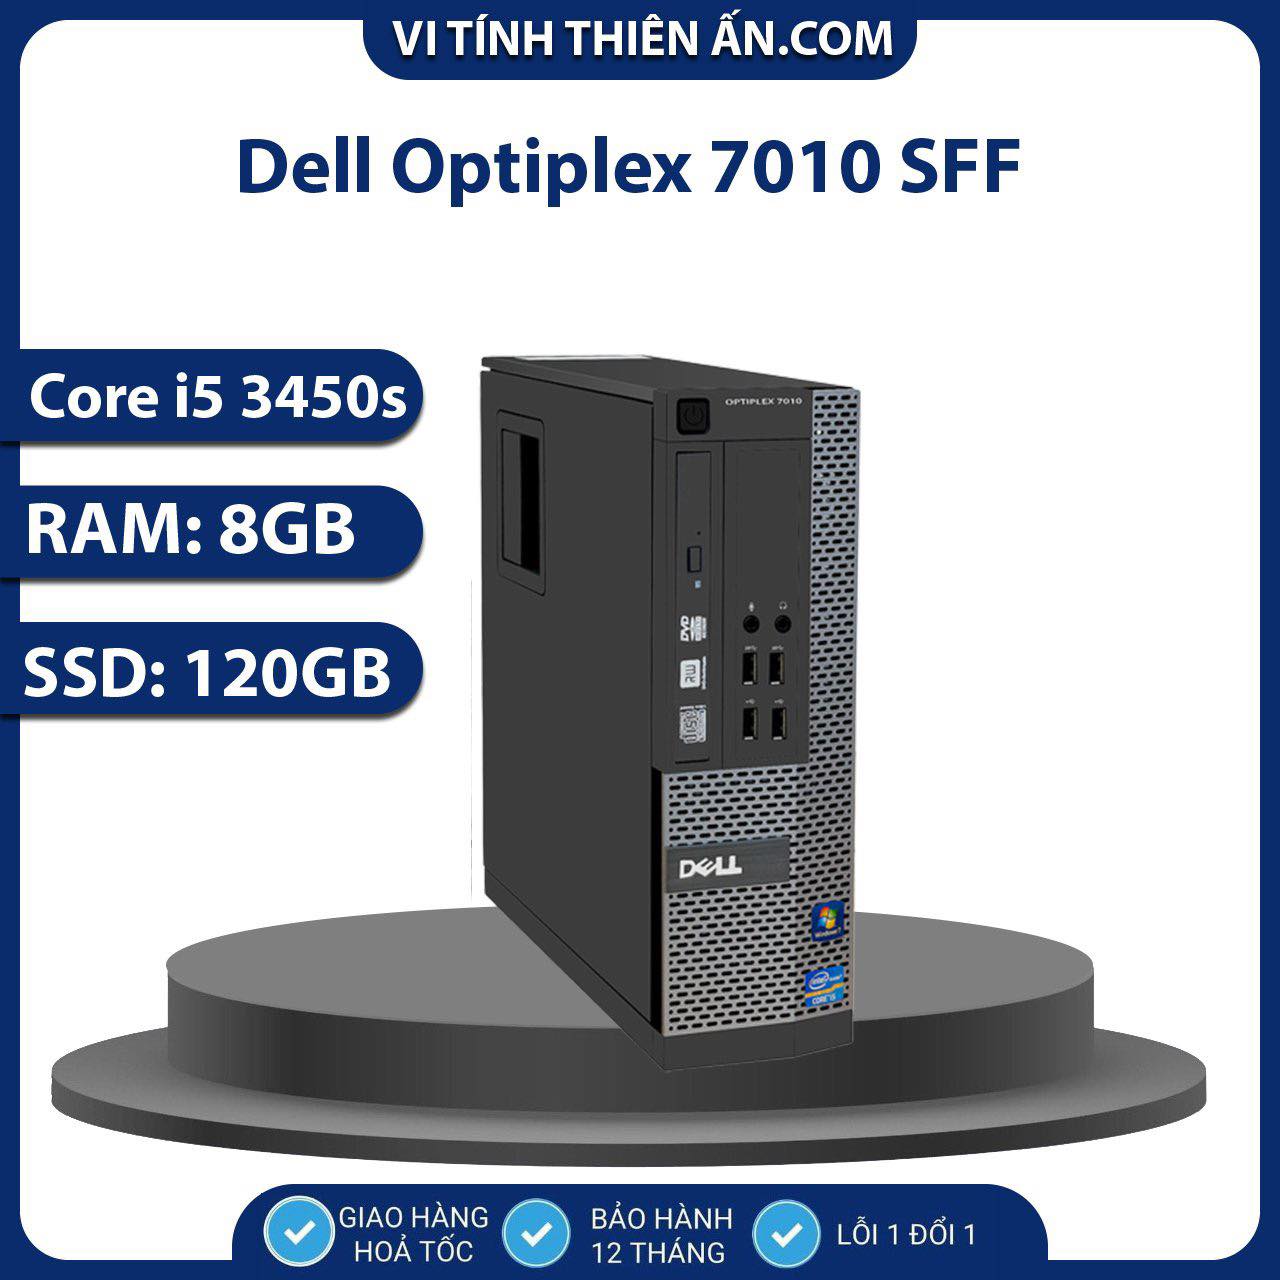 Thùng máy tính Dell 390 MT chạy i7 2600 / Ram 8gb / SSD 128Gb